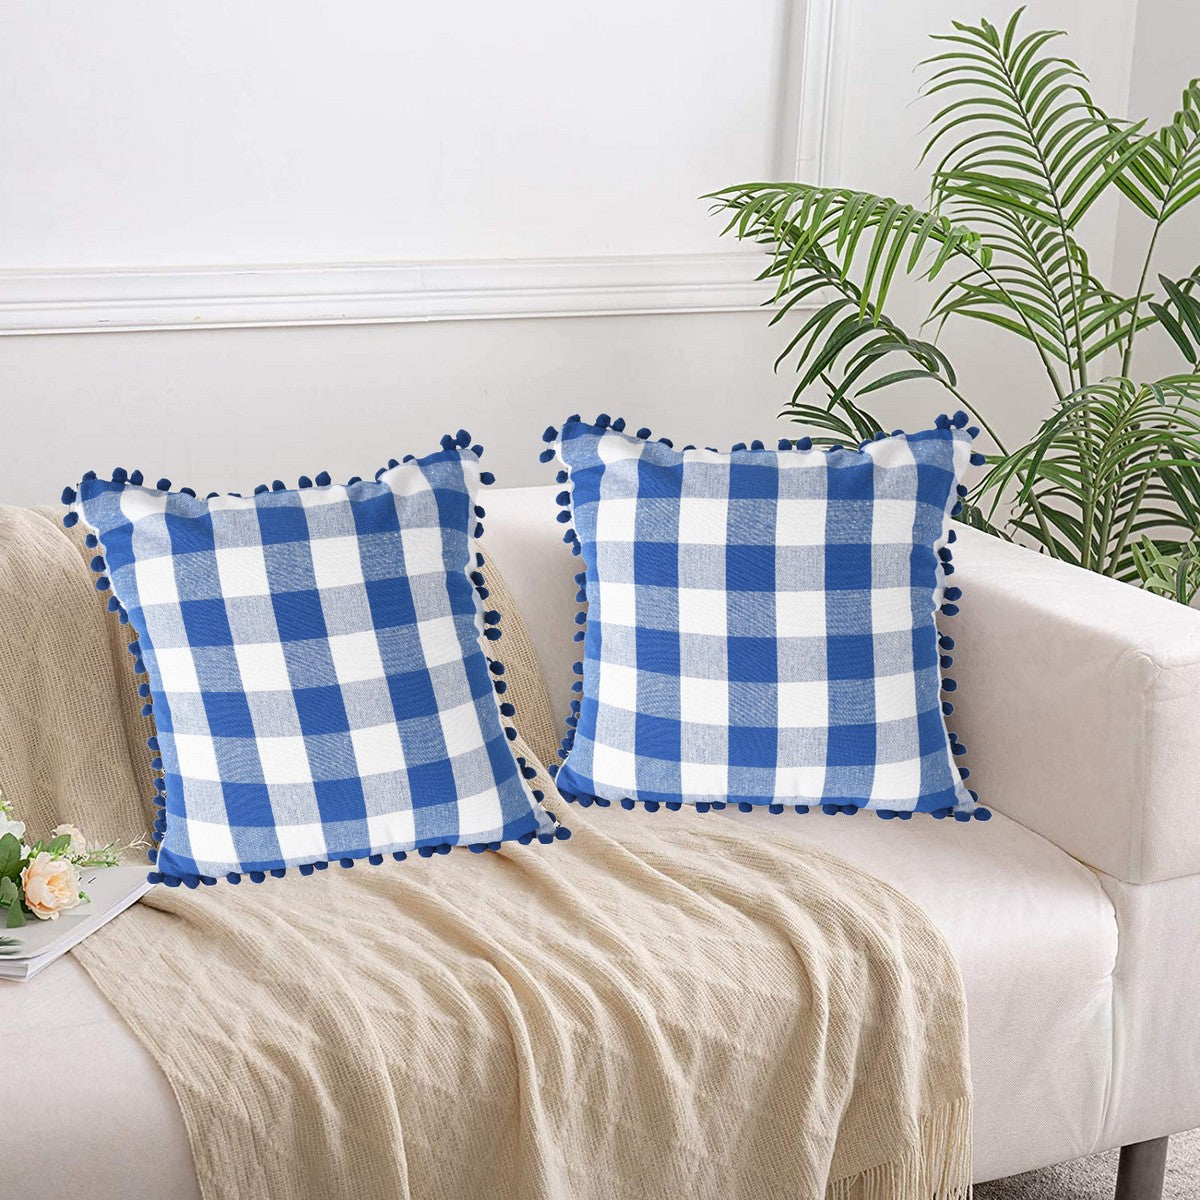 Lushomes Square Cushion Cover with Pom Pom, Cotton Sofa Pillow Cover Set of 2, 18x18 Inch, Big Checks, Blue and White Checks, Pillow Cushions Covers (Pack of 2, 45x45 Cms)